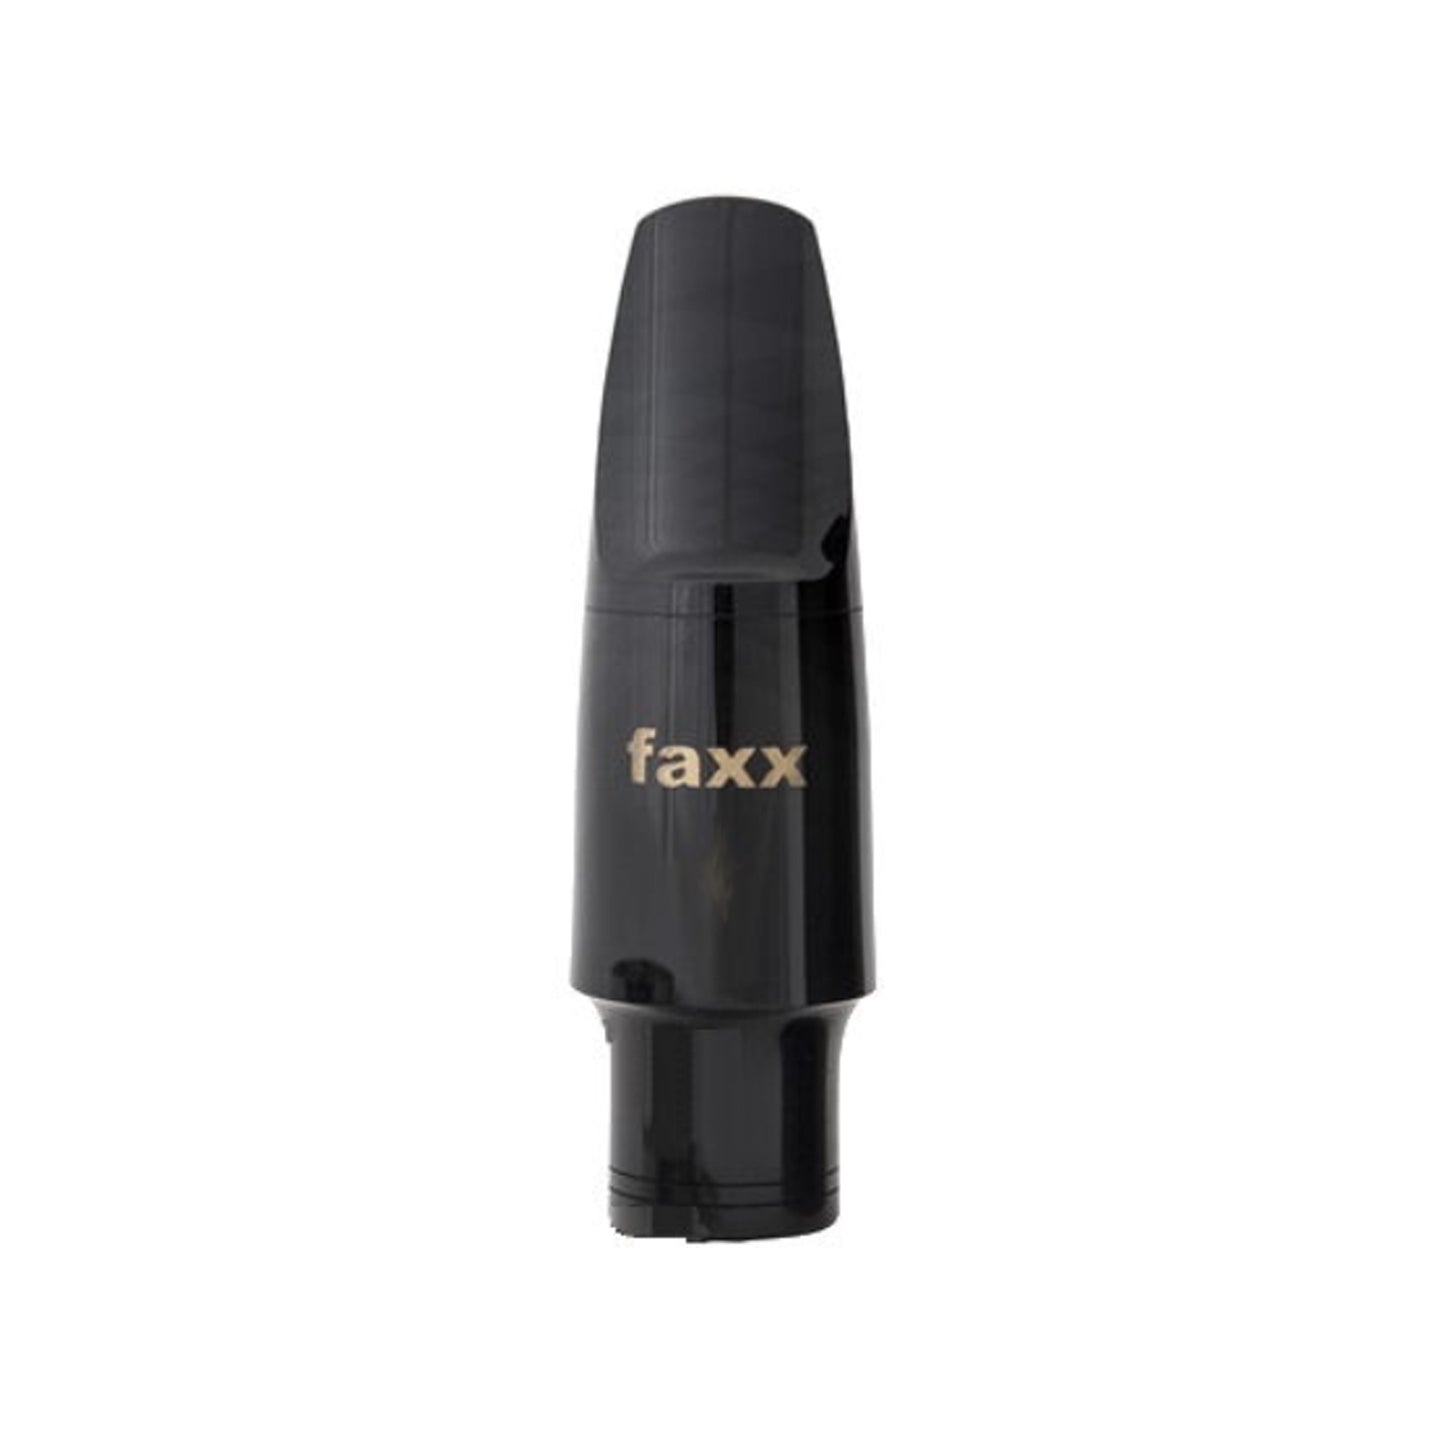 Faxx Tenor Sax Mouthpiece